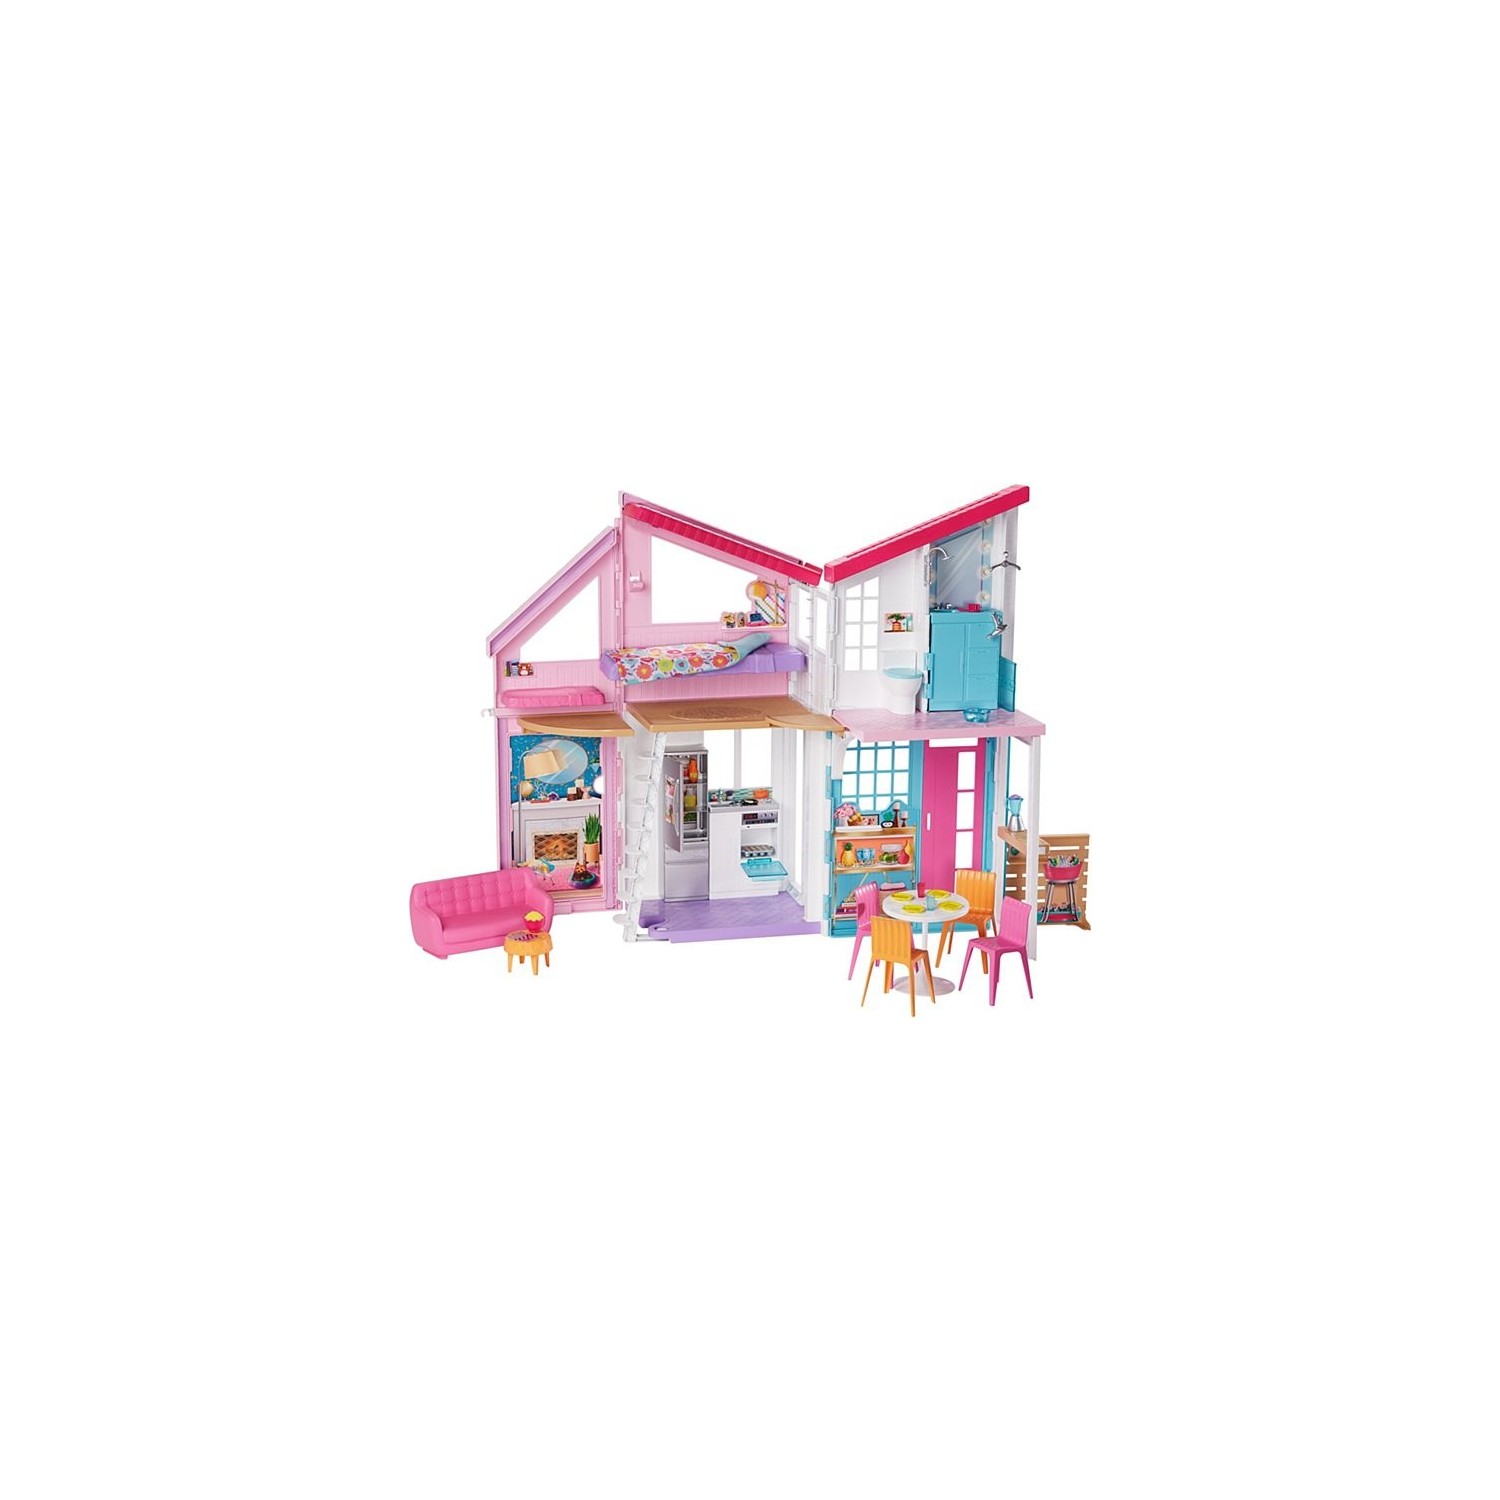 Игровой набор Barbie Malibu House barbie кукольный домик fxg55 белый розовый